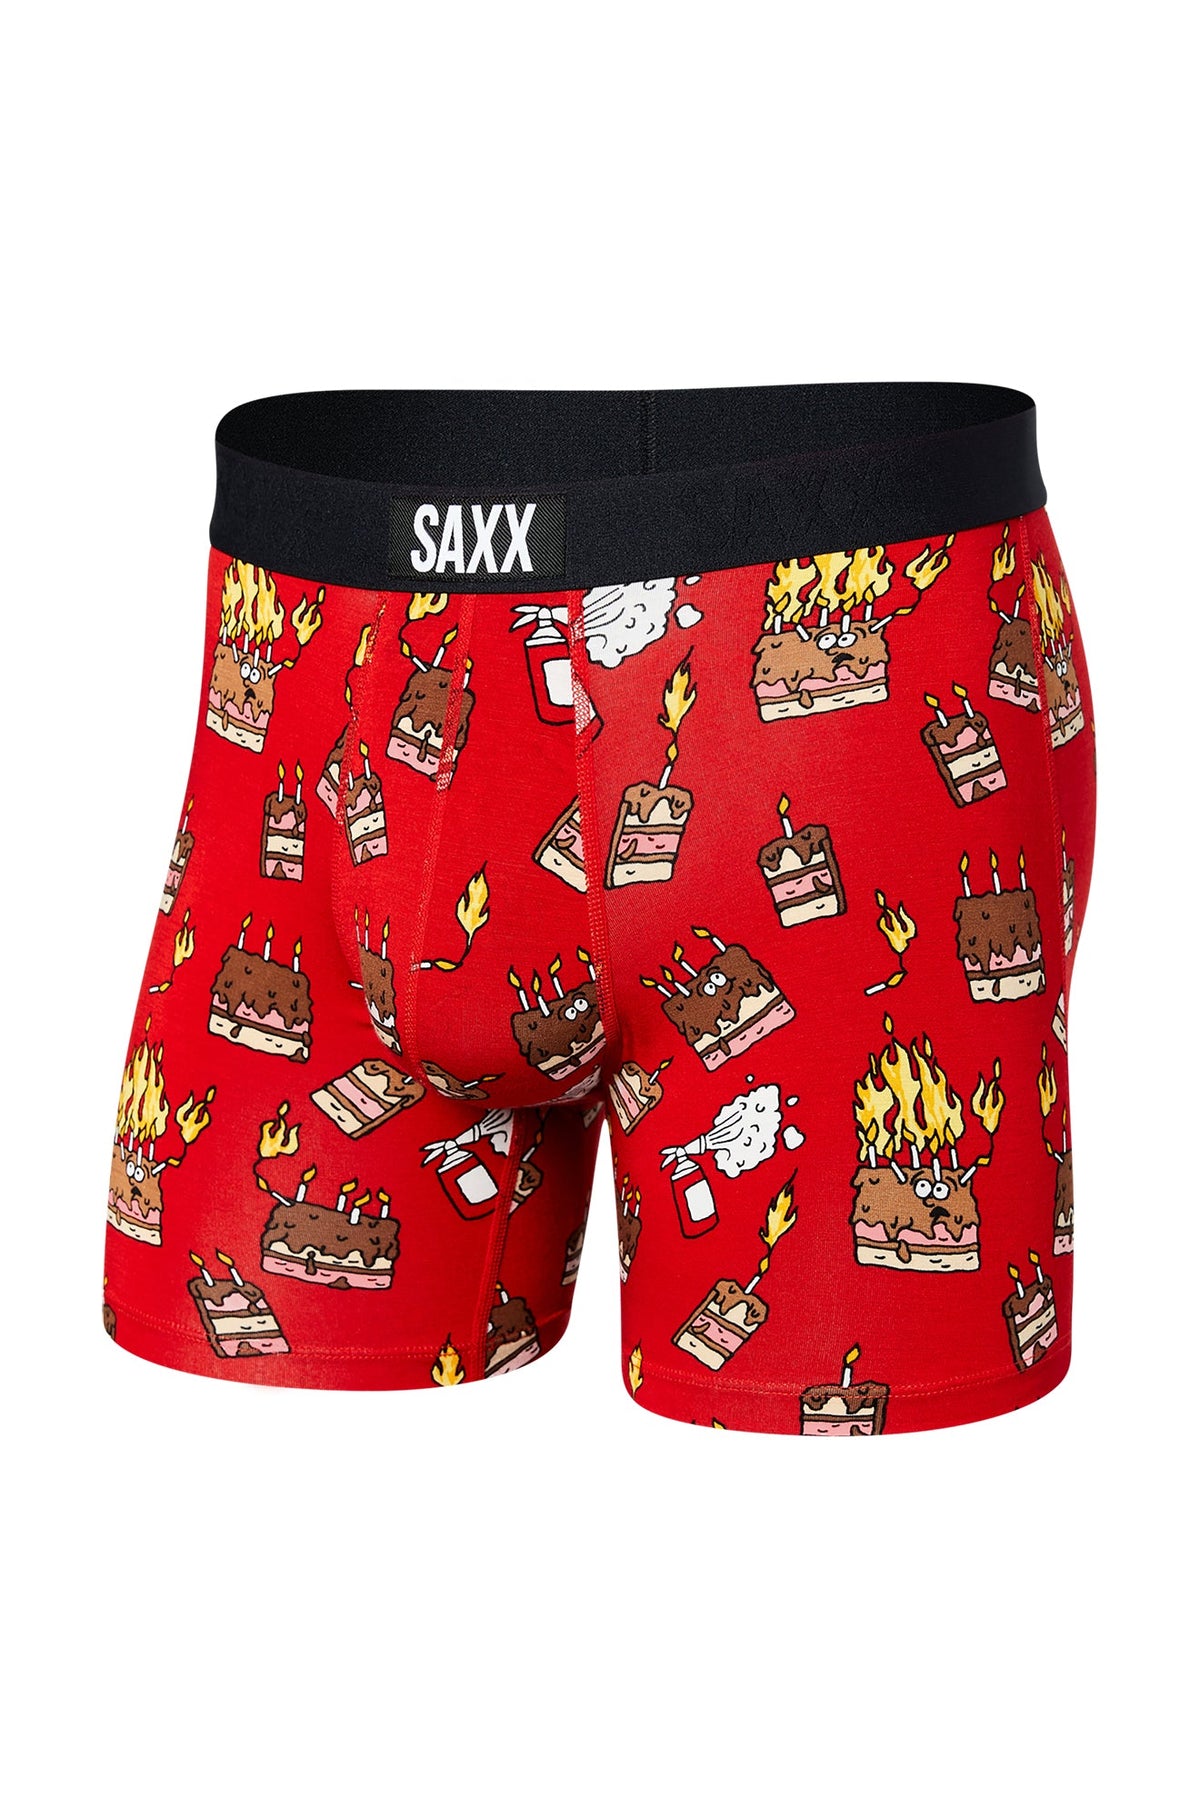 Sous-vêtement/boxer pour homme par Saxx | SXBM35 FUR | Machemise.ca, vêtements mode pour hommes